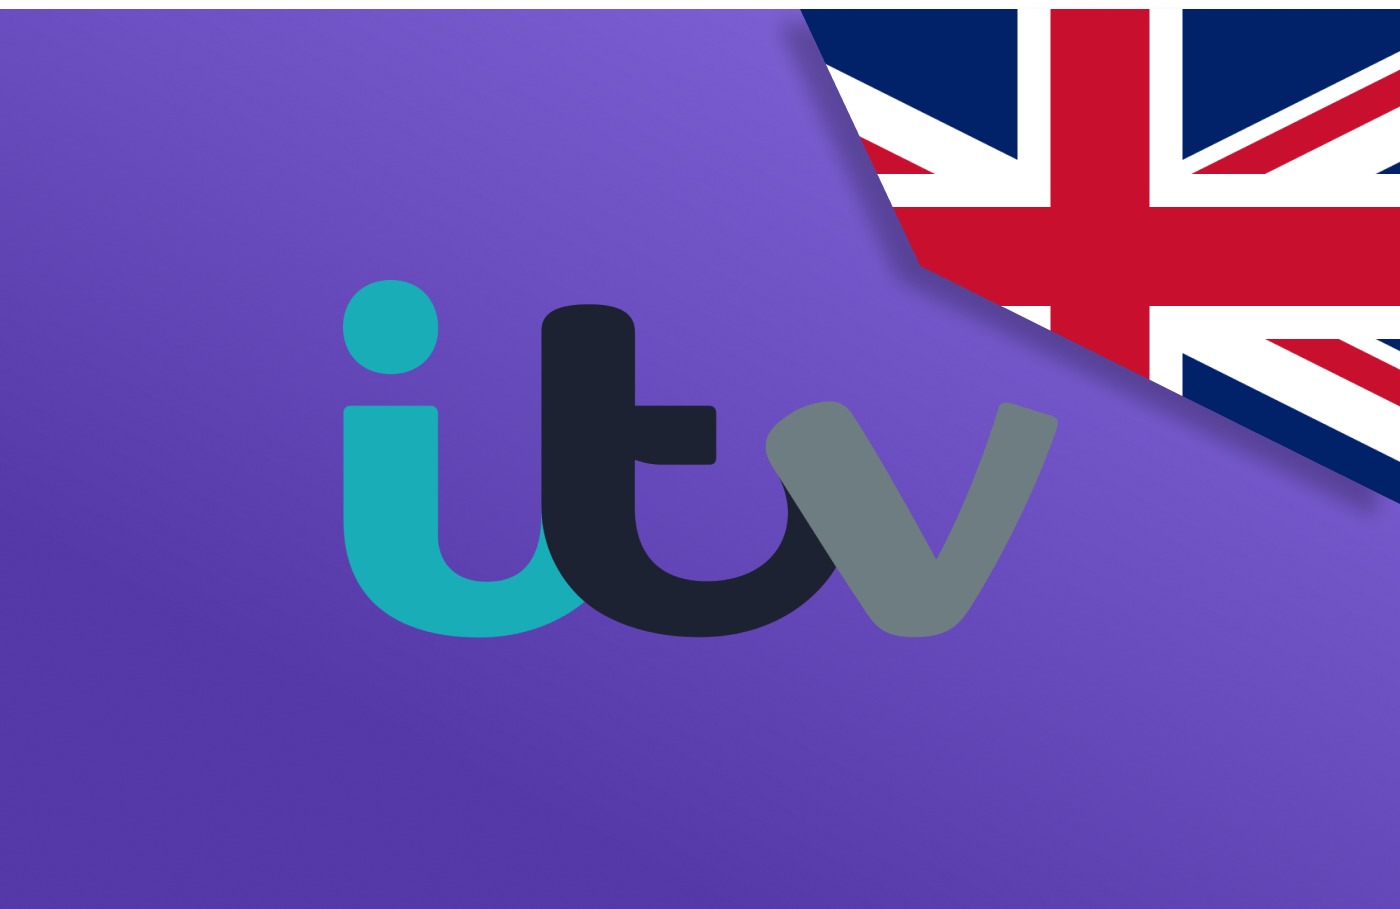 Watch ITV outside UK